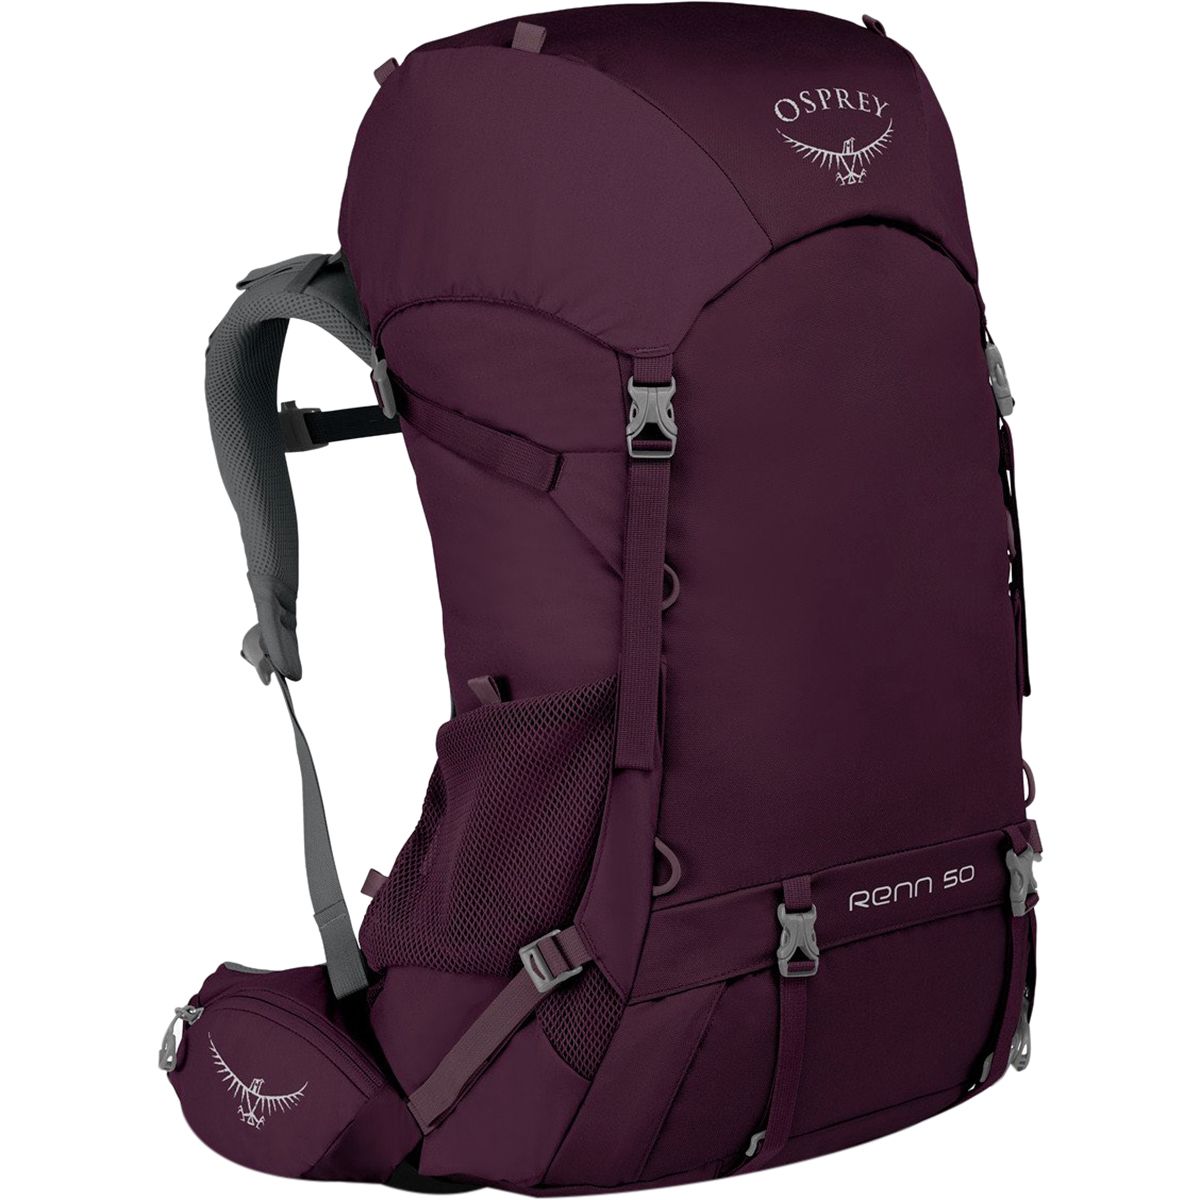 Osprey Packs Renn 50L Backpack - Women's